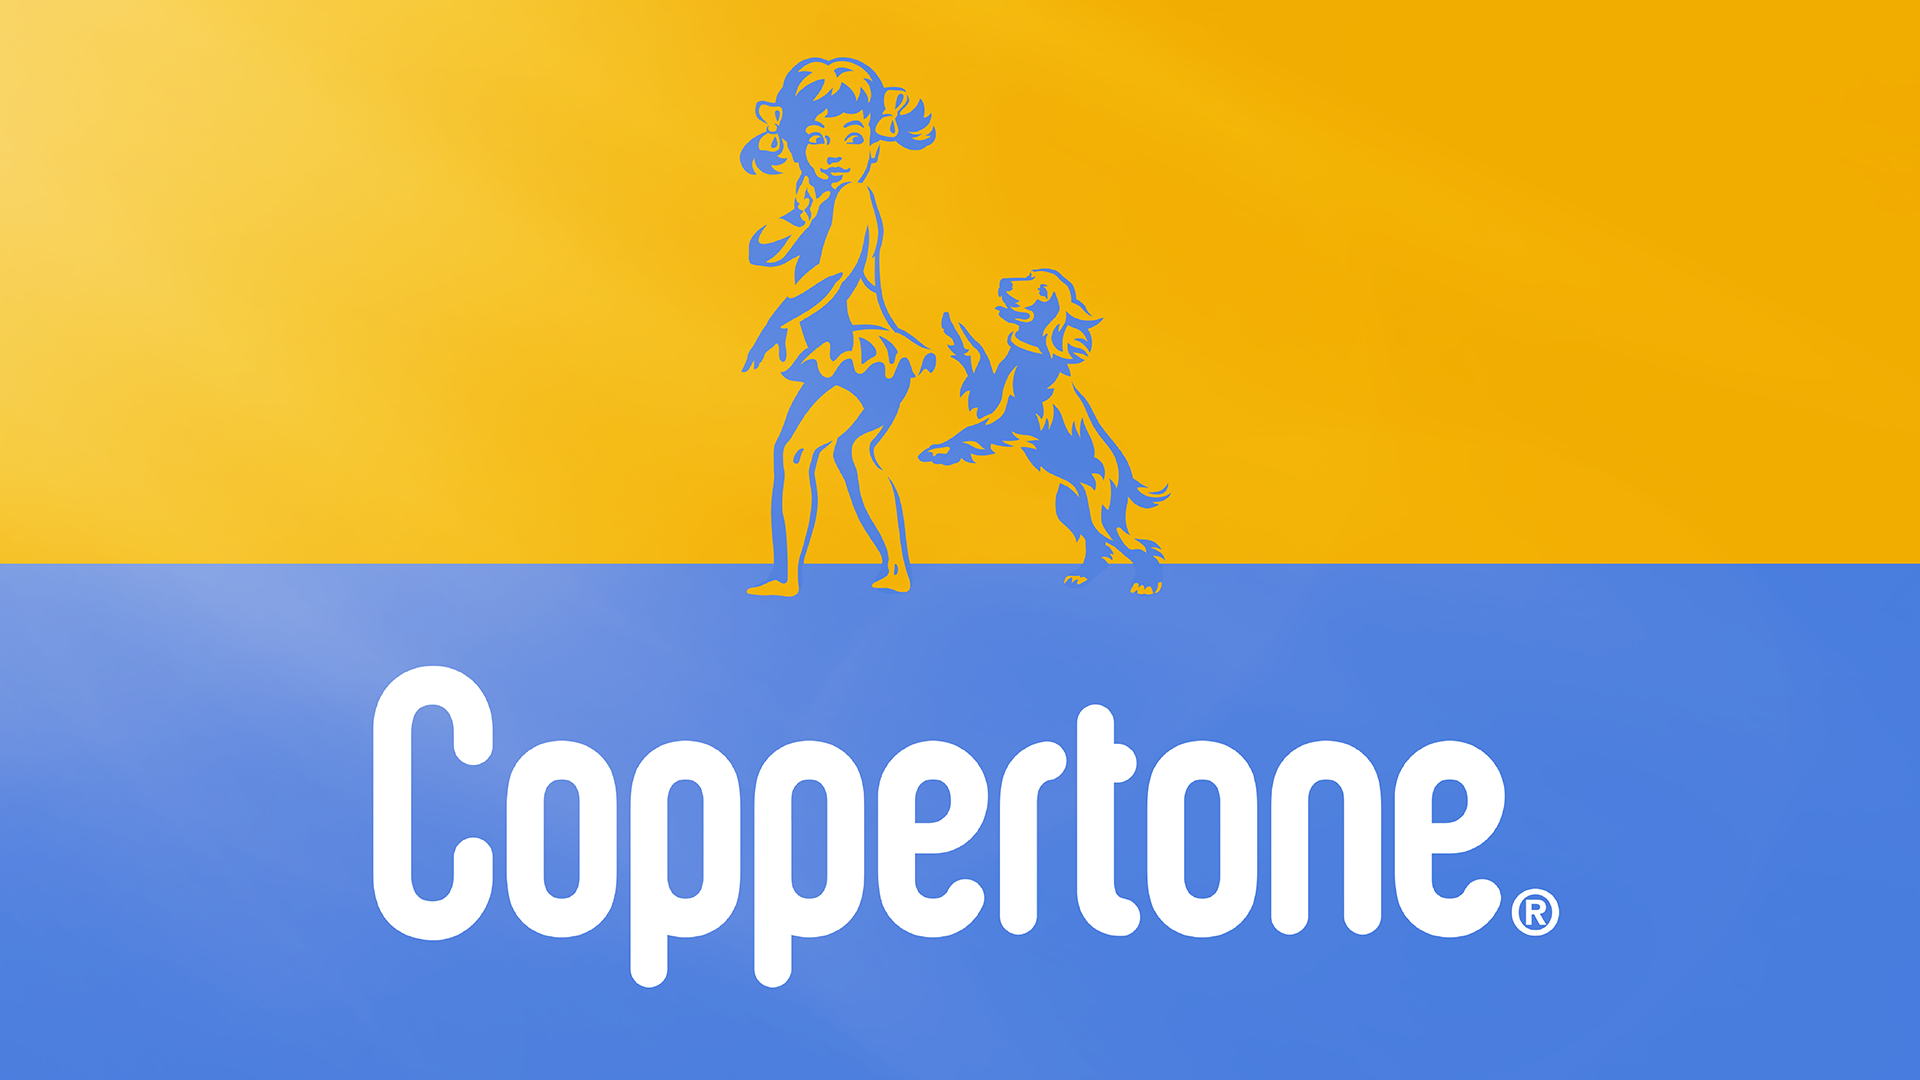 Coppertone Brand